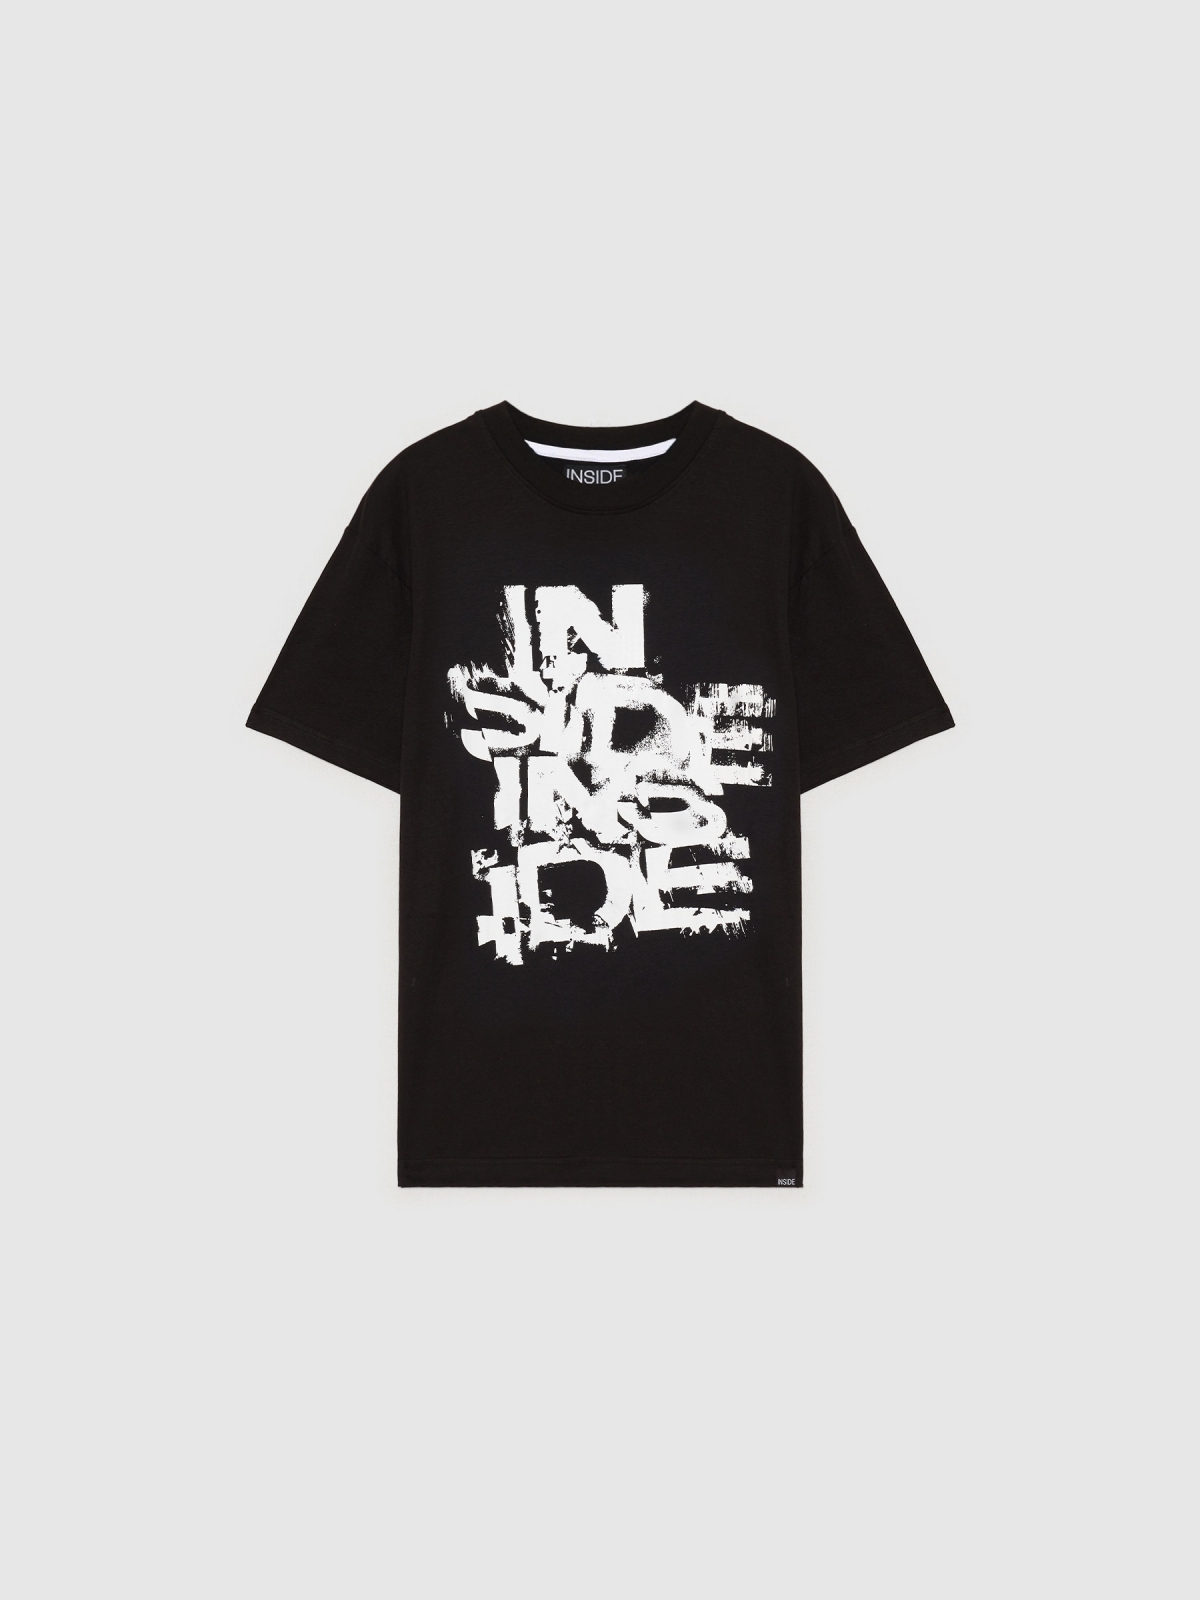  INSIDE logo T-shirt black